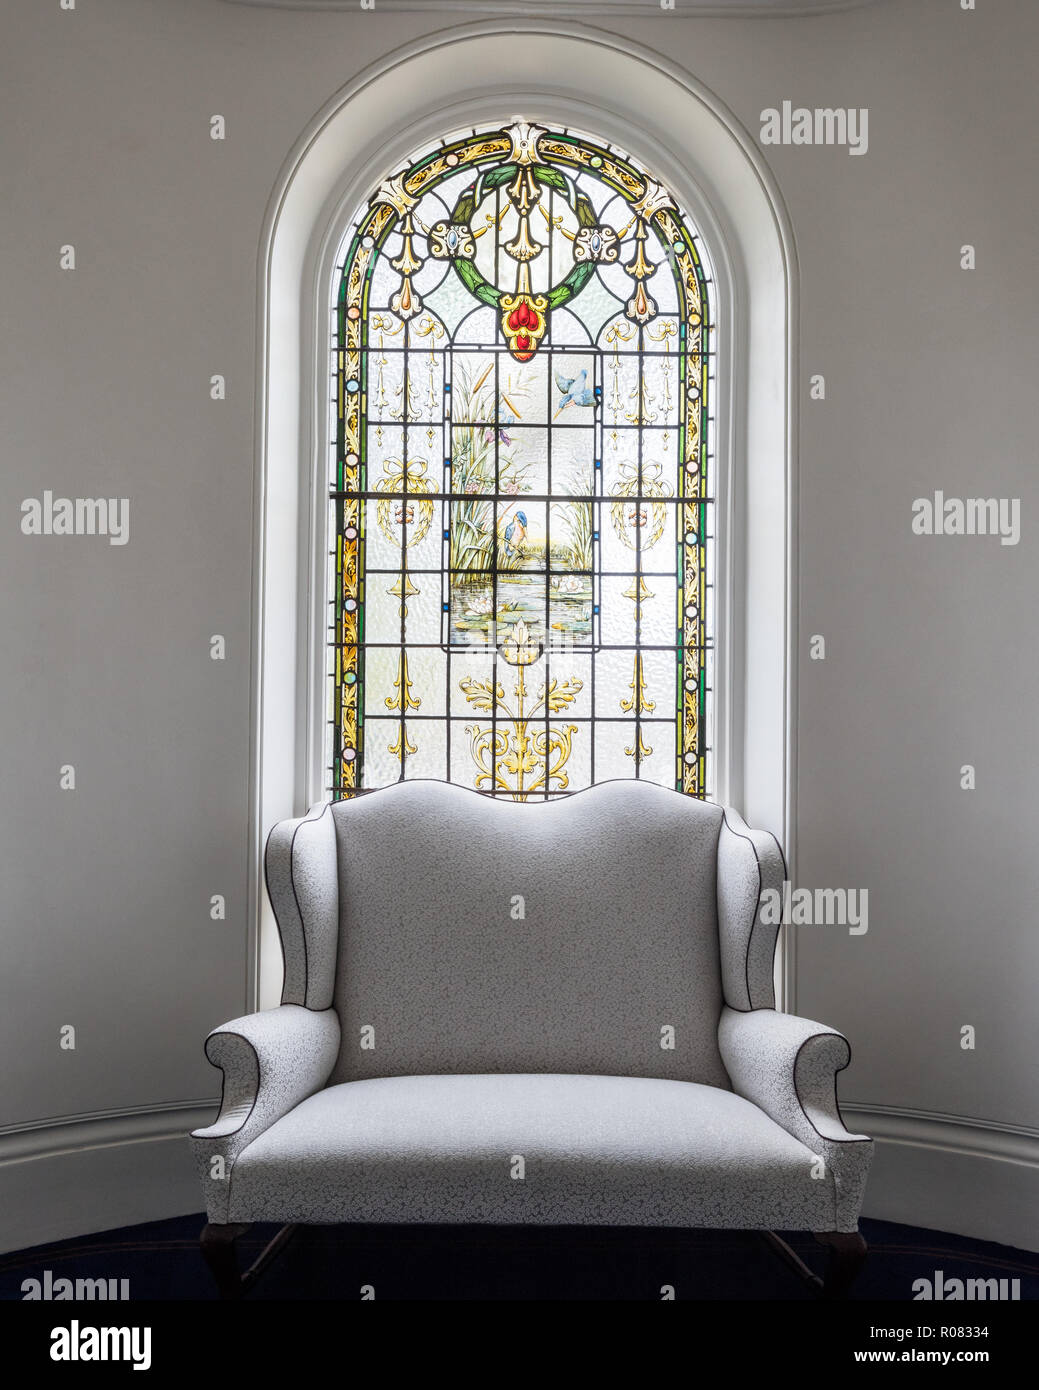 Sessel von Fenster aus buntem Glas. Stockfoto